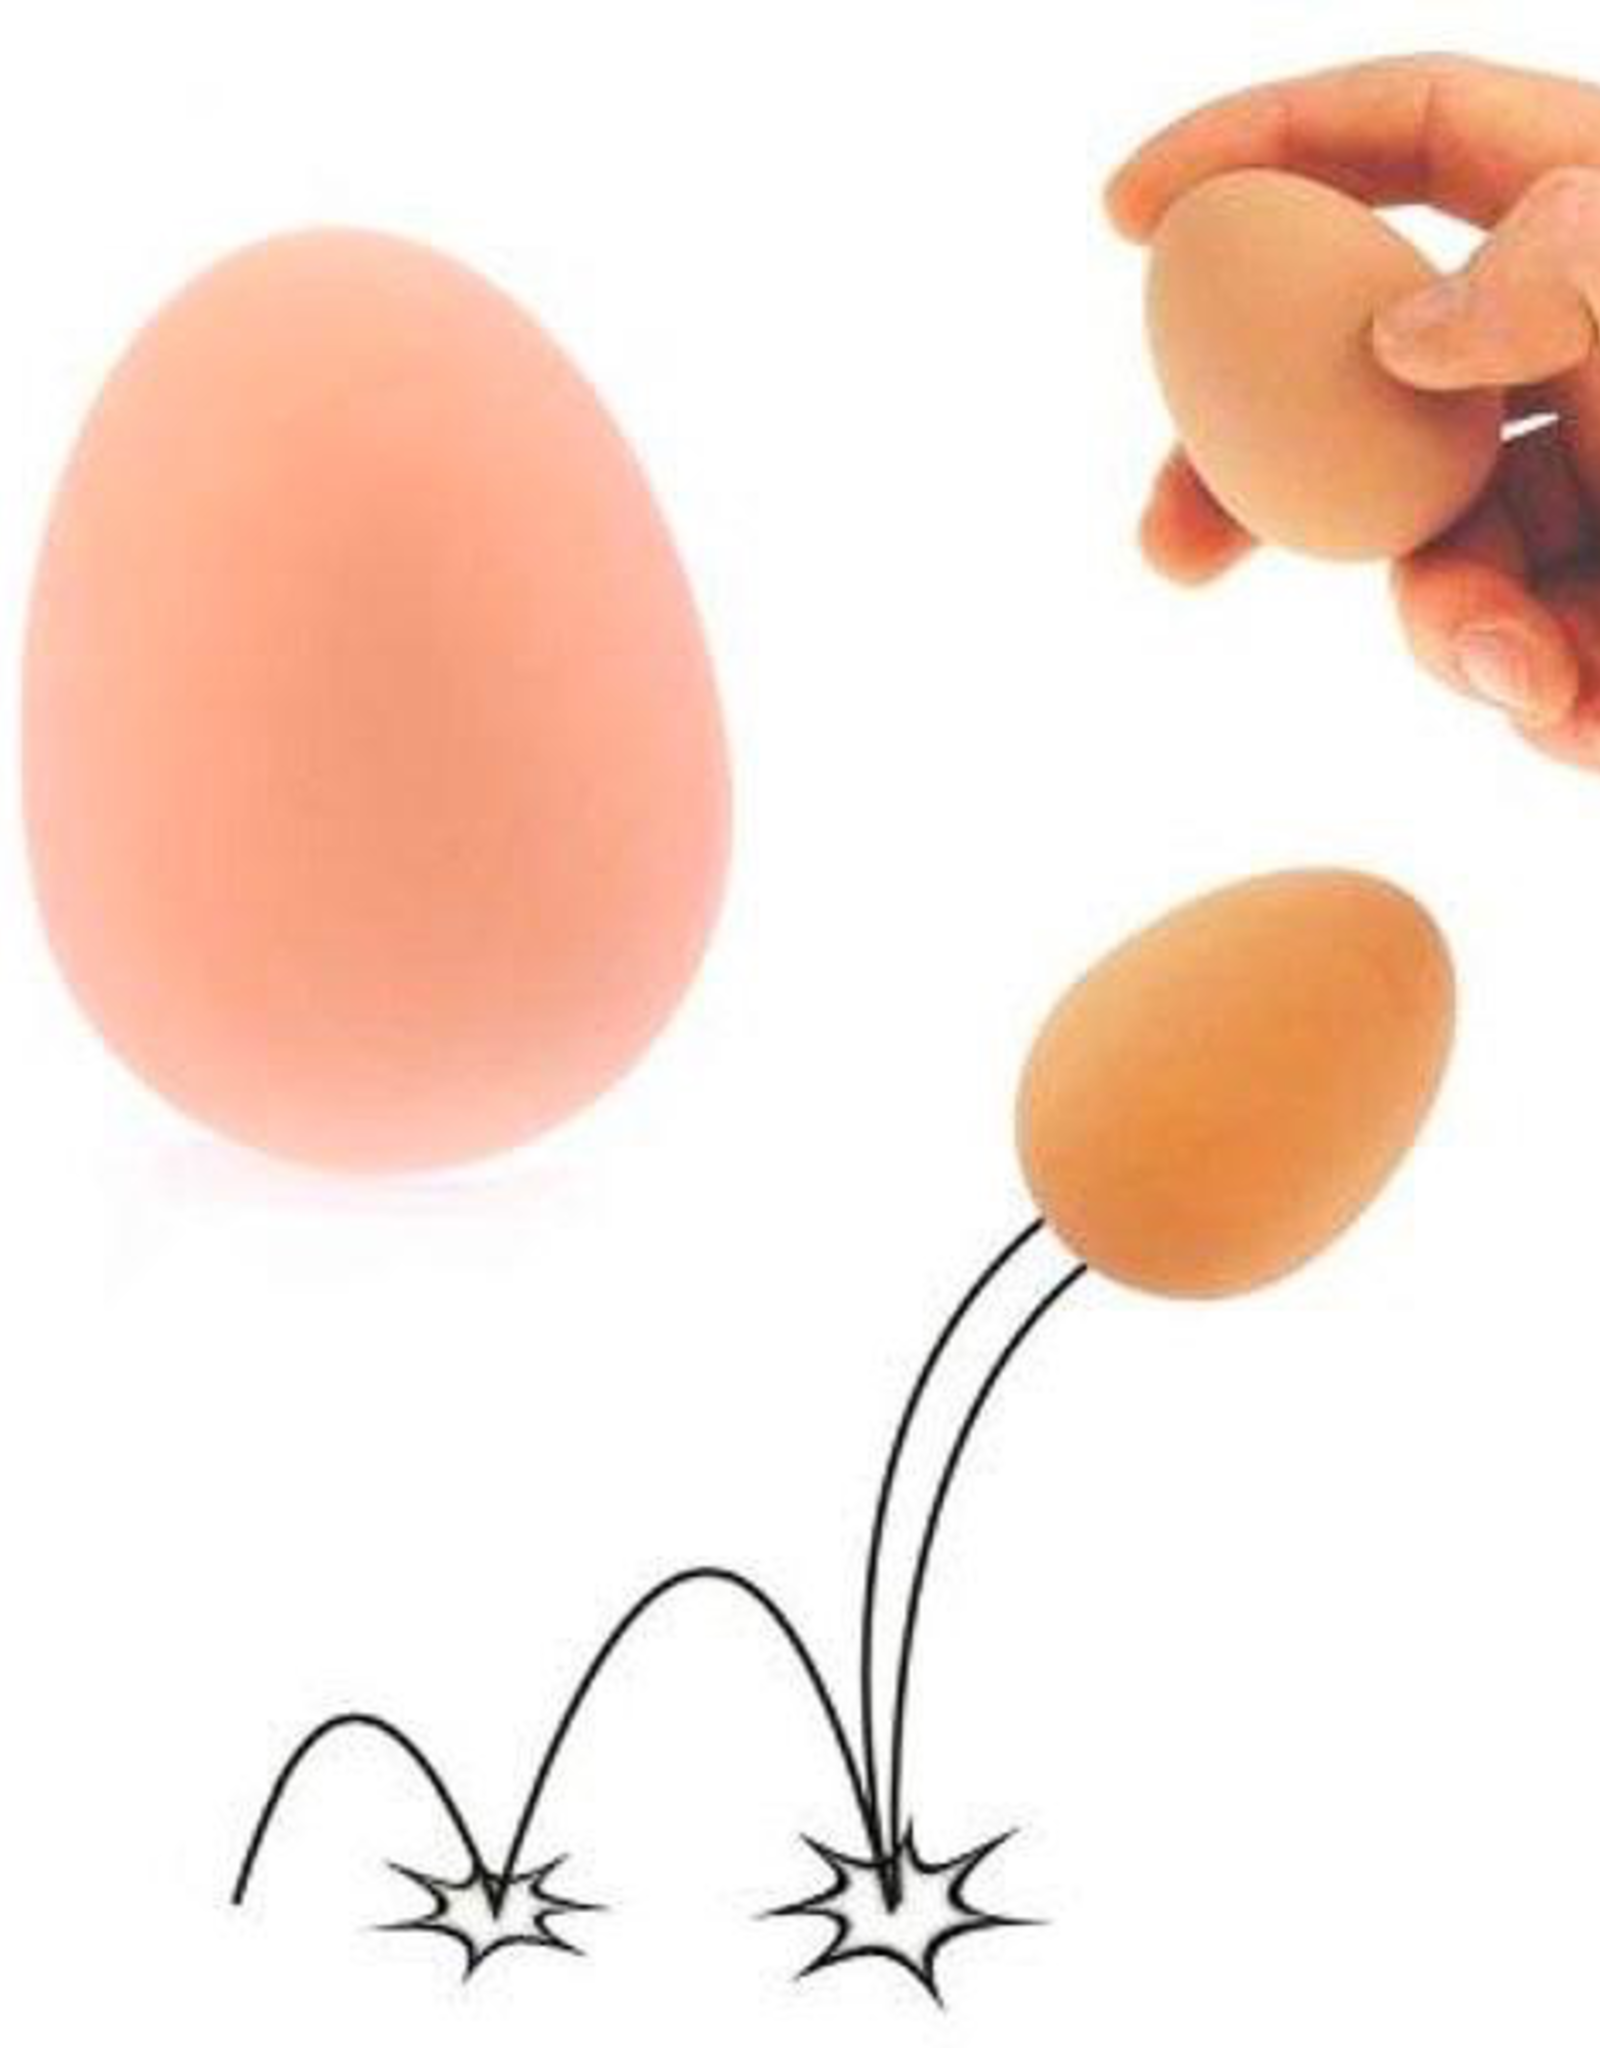 Яйцо попрыгунчик. Эксперимент яйцо попрыгунчик. Опыт детям прыгающее яйцо.